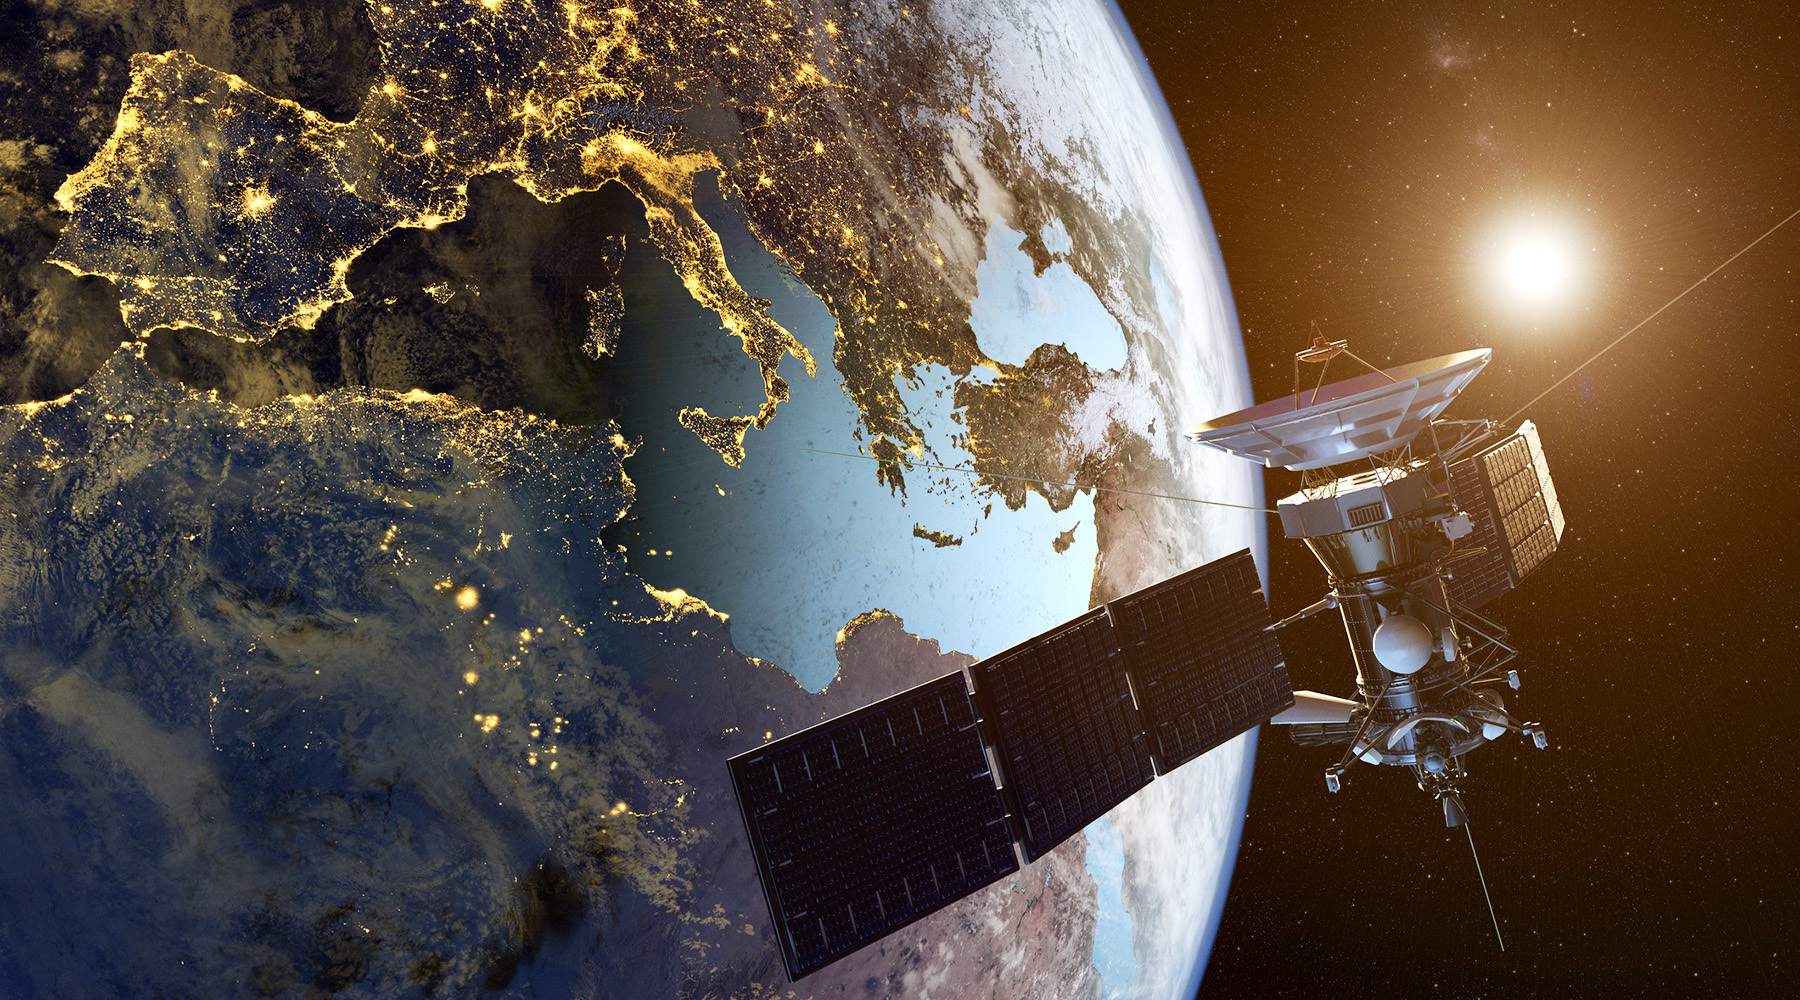 Космос под присмотром: какими возможностями обладают российские спутники-инспекторы